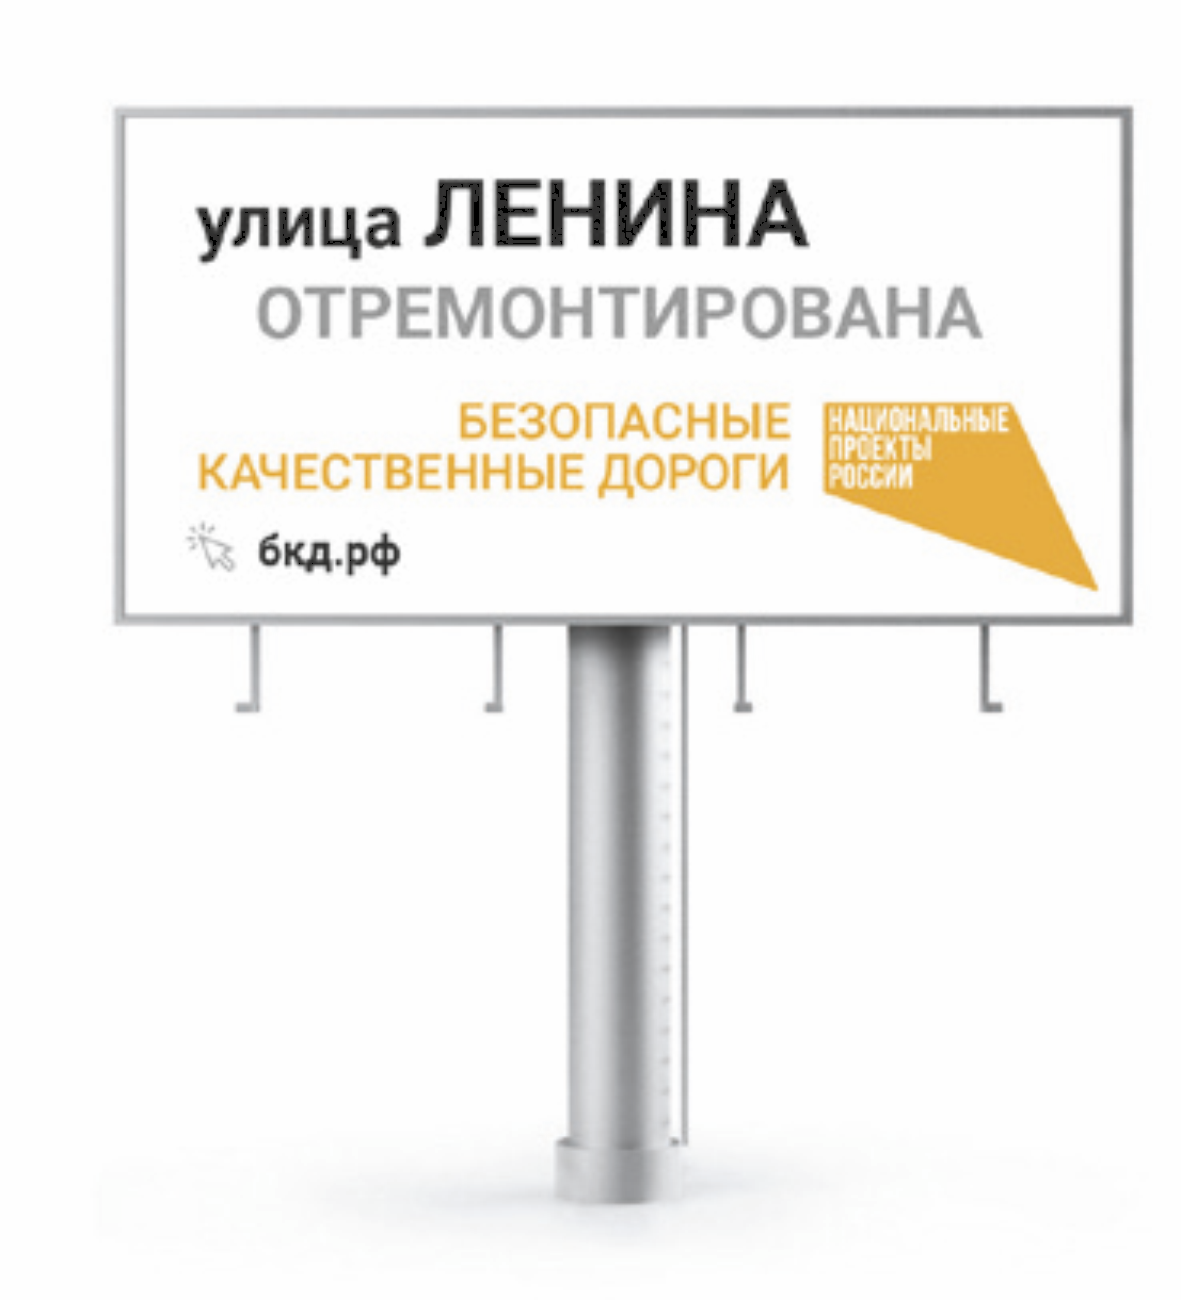 Информационный щит на объектах национального проекта “Безопасные и качественные автомобильные дороги”. Билборд "Улица"